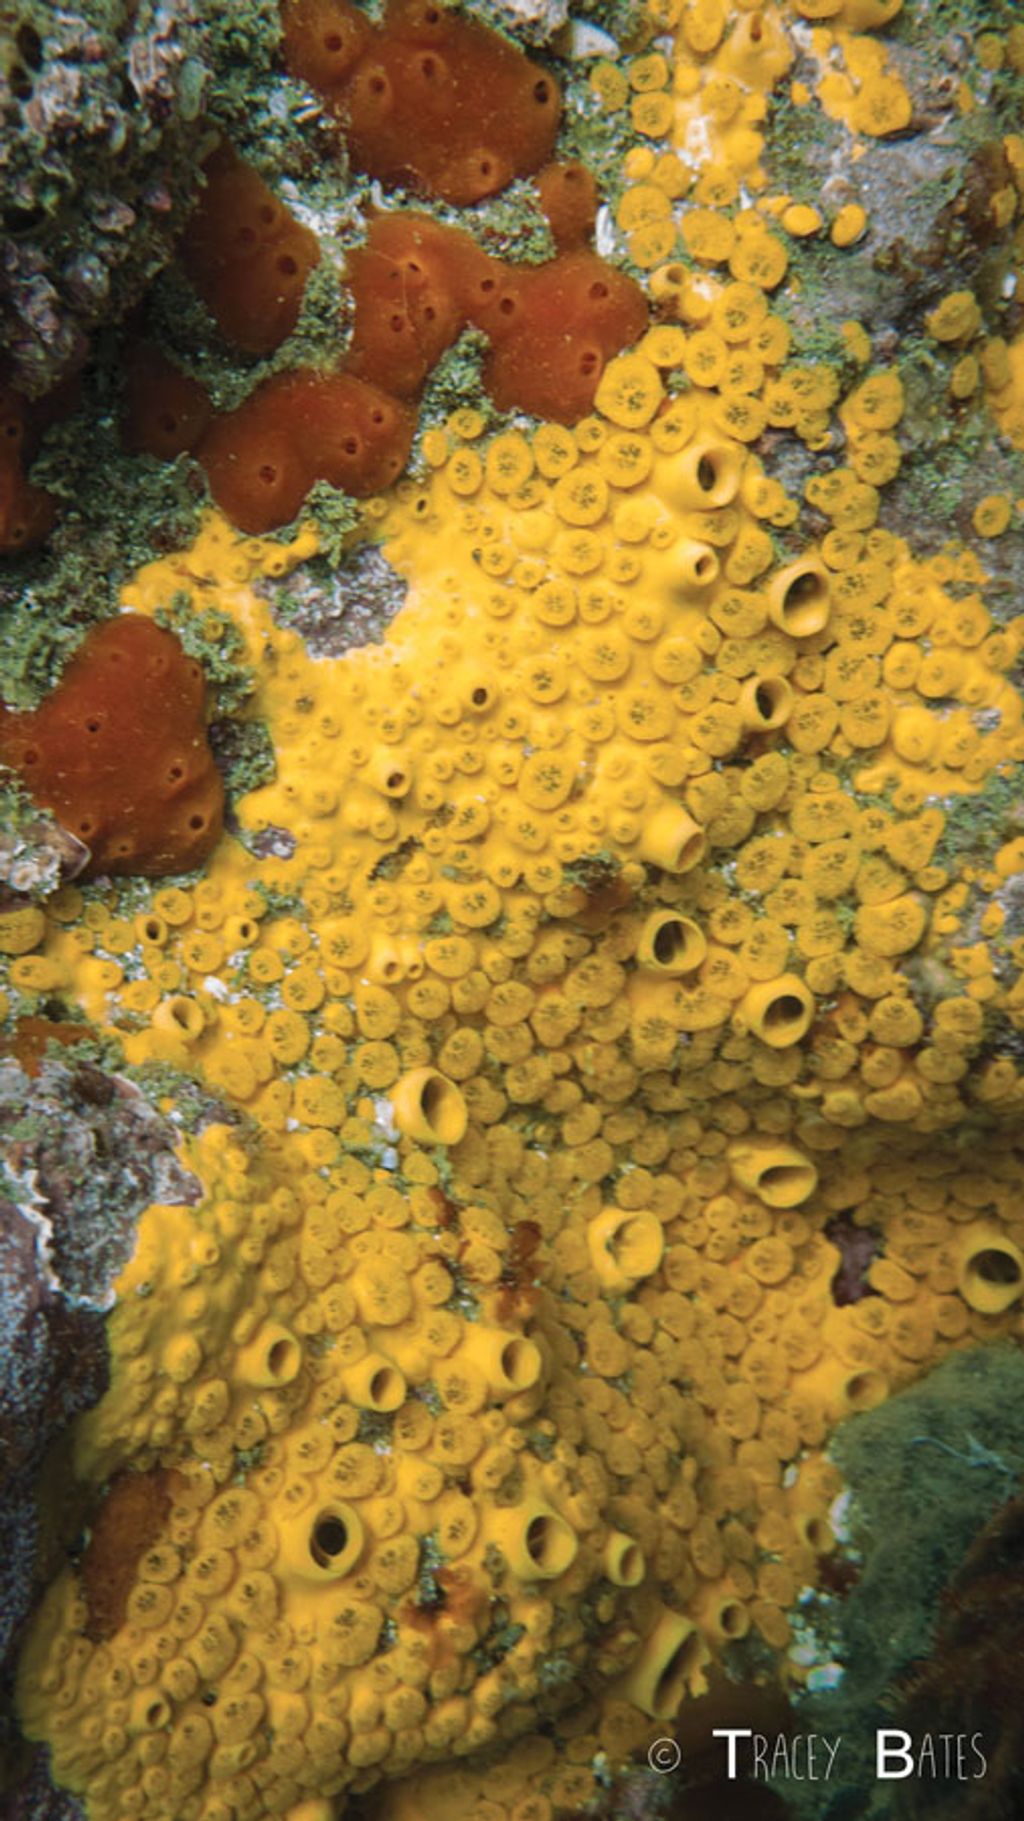 Facts About Sponges (Porifera)